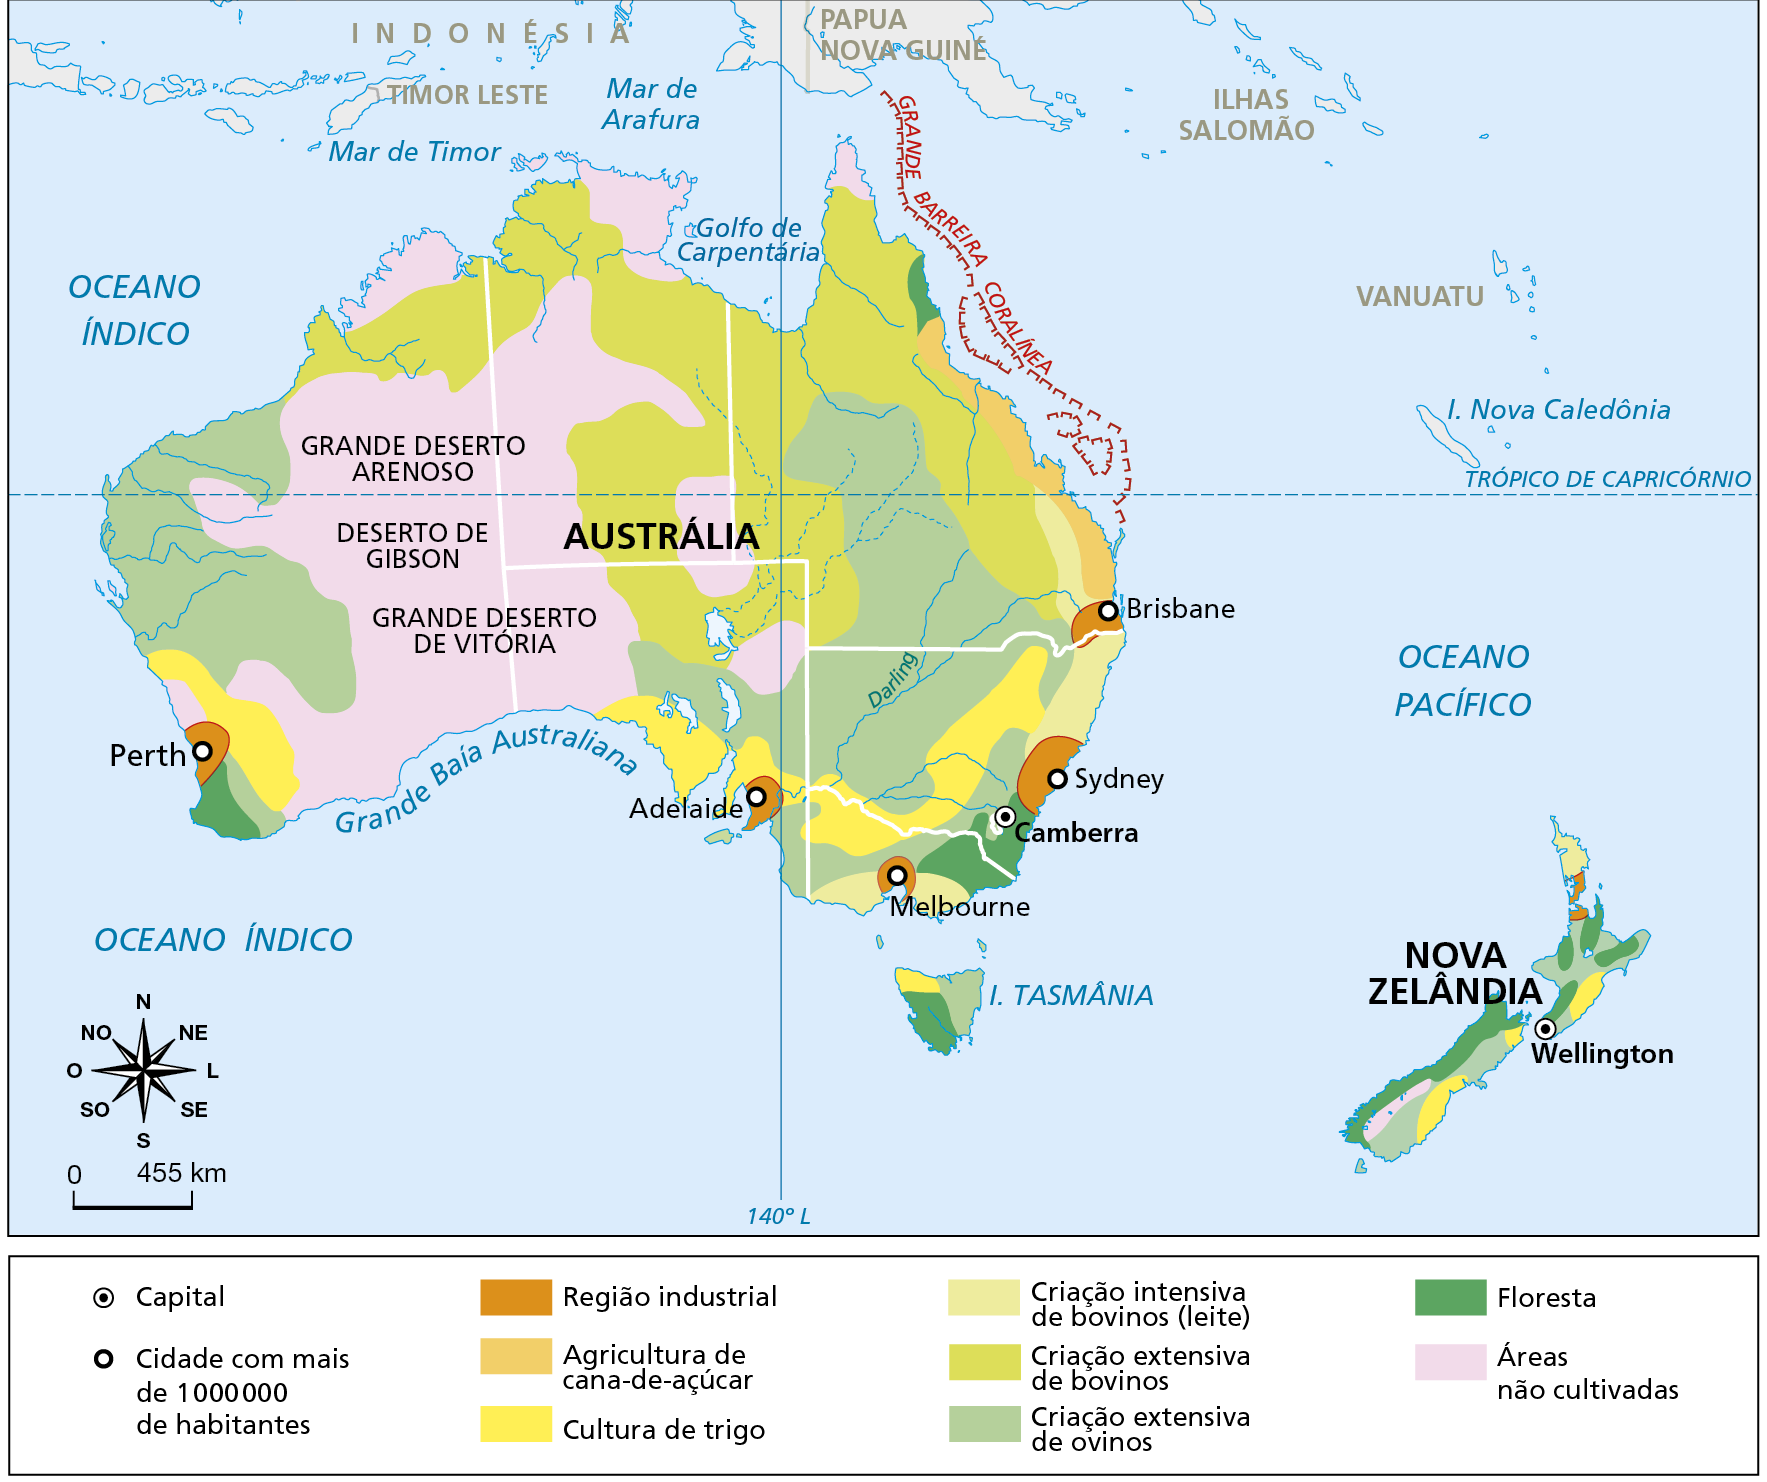 Mapa. Austrália e Nova Zelândia: economia. Mapa representando o espaço econômico da Austrália e da Nova Zelândia. Capital Austrália: Camberra. Nova Zelândia: Wellington. Cidade com mais de 1.000.000 de habitantes Austrália: Perth (na costa sudoeste), Adelaide e Melbourne (na costa sul), Sydney e Brisbane (na costa leste). Região industrial: entorno das cidades australianas de Perth, Adelaide, Melbourne, Sydney e Brisbane e pequenas zonas na porção norte da Nova Zelândia. Agricultura de cana-de-açúcar: porção nordeste da Austrália, na área litorânea. Cultura de trigo: porção sudeste, sudoeste e sul da Austrália, norte da ilha da Tasmânia e porção central e sul da Nova Zelândia. Criação intensiva de bovinos (leite): costa leste e sul da Austrália e extremo norte da Nova Zelândia. Criação extensiva de bovinos: porção central, nordeste e norte da Austrália. Criação extensiva de ovinos: porção oeste e interior da porção sudeste da Austrália, ilha da Tasmânia e porção norte e central da Nova Zelândia. Floresta: pequenos fragmentos no sudoeste e sudeste da Austrália, ilha da Tasmânia e porção oeste da Nova Zelândia. Áreas não cultivadas: predominante no interior da porção oeste e no sudoeste da Austrália, onde estão o Grande Deserto Arenoso, o Deserto de Gibson e o Grande Deserto de Vitória e pequeno trecho no interior da Nova Zelândia. Na parte inferior esquerda, rosa dos ventos e escala de 0 a 455 quilômetros.